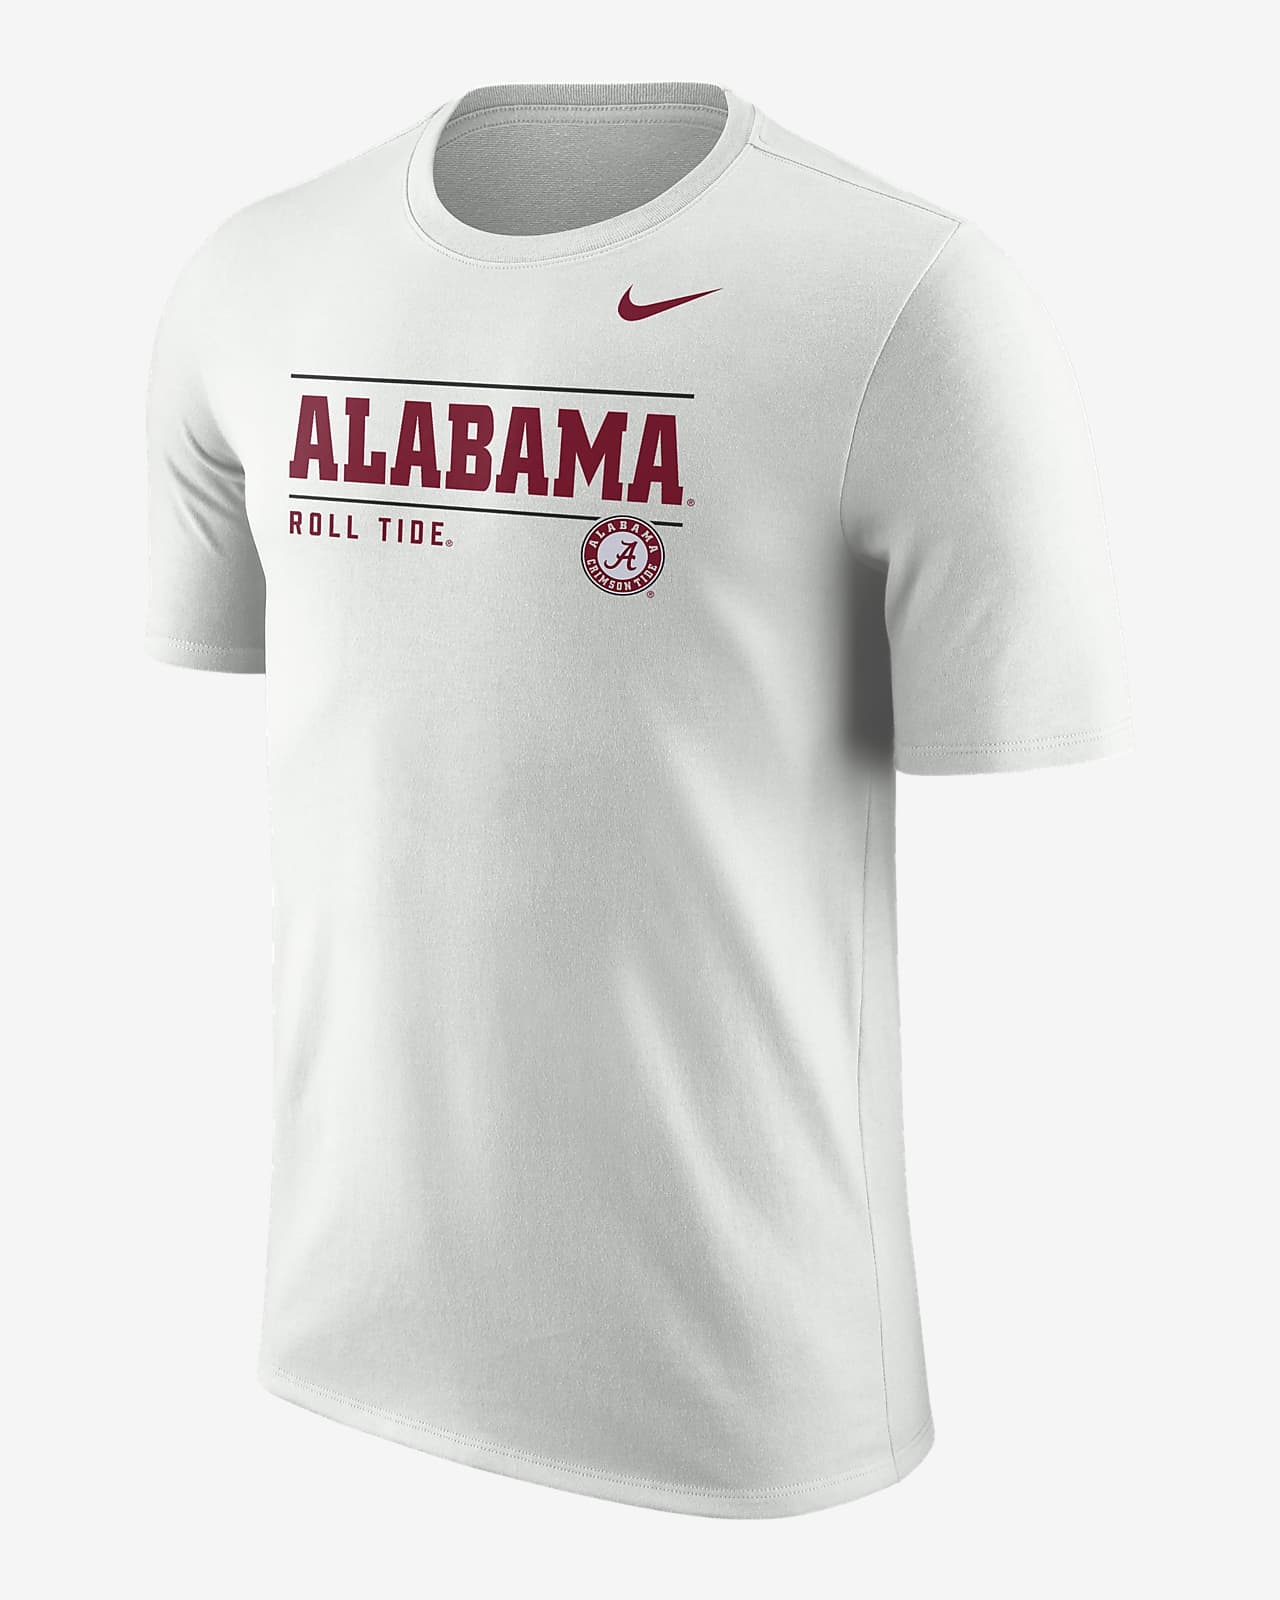 knal ik ben ziek Statistisch Alabama Men's Nike College T-Shirt. Nike.com